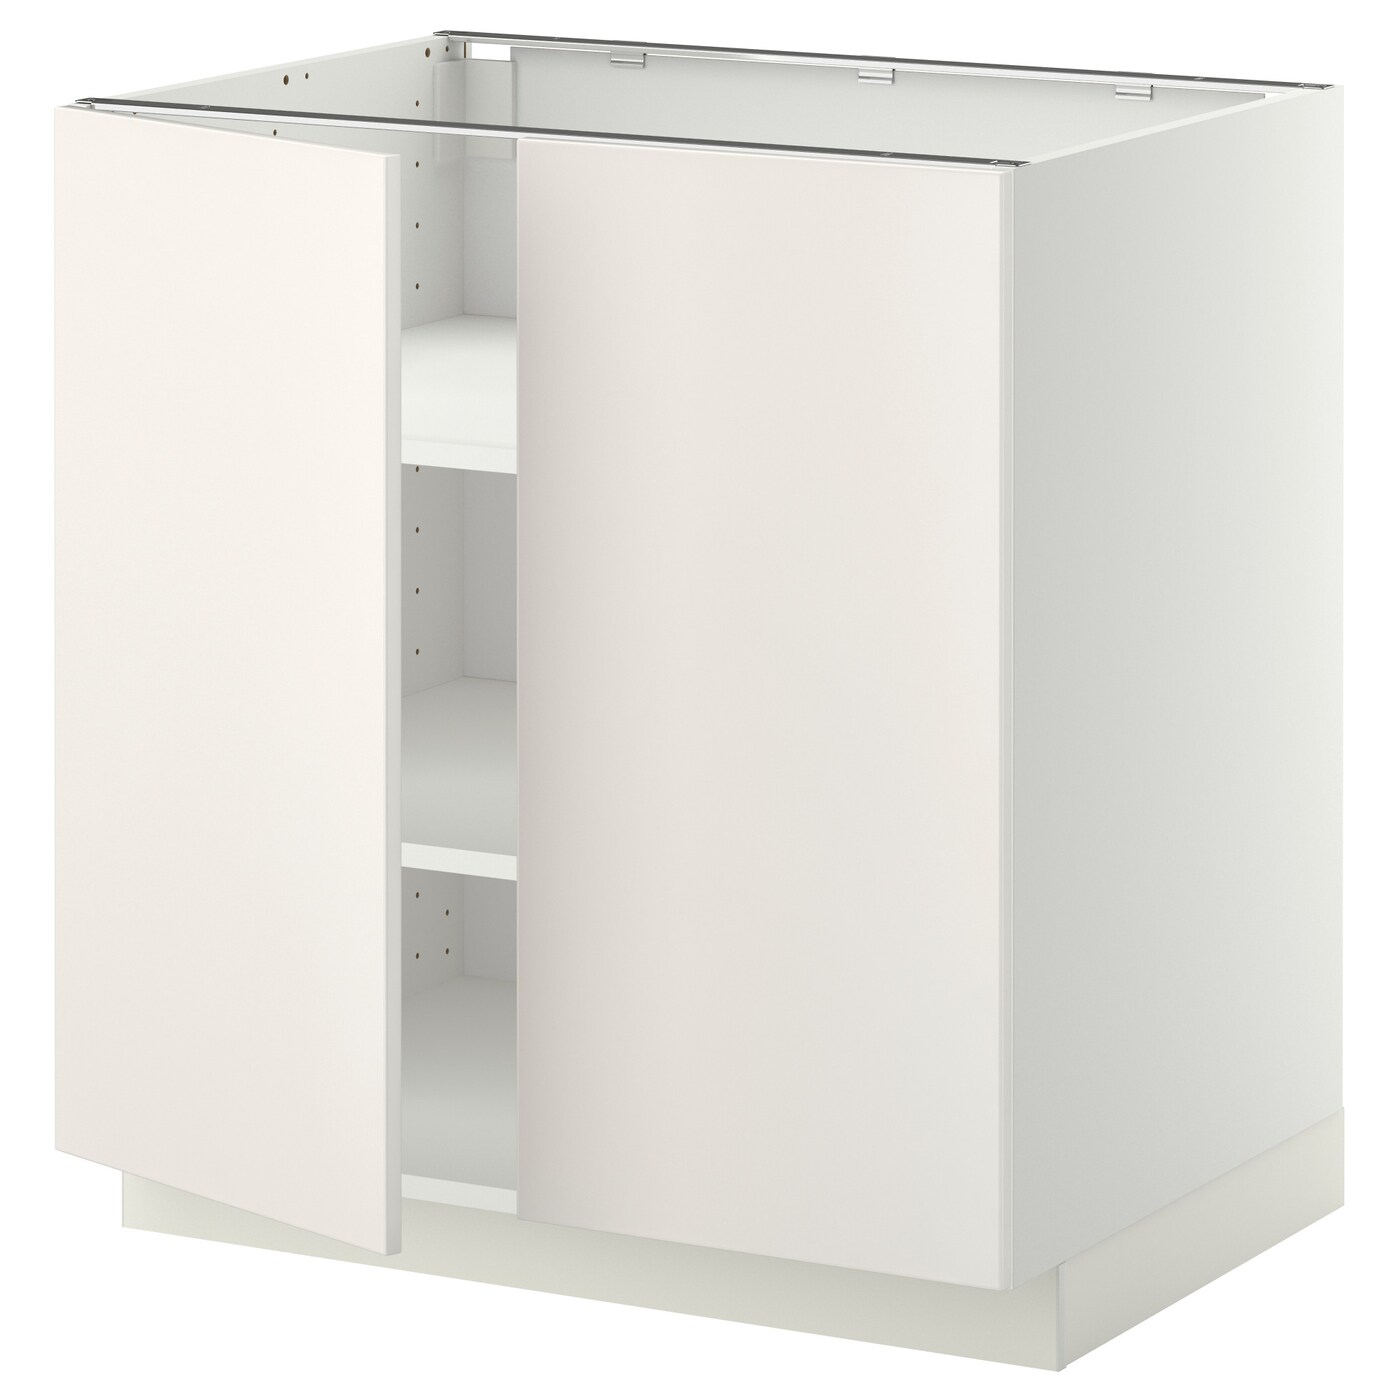 Напольный шкаф - IKEA METOD, 88x62x80см, белый, МЕТОД ИКЕА